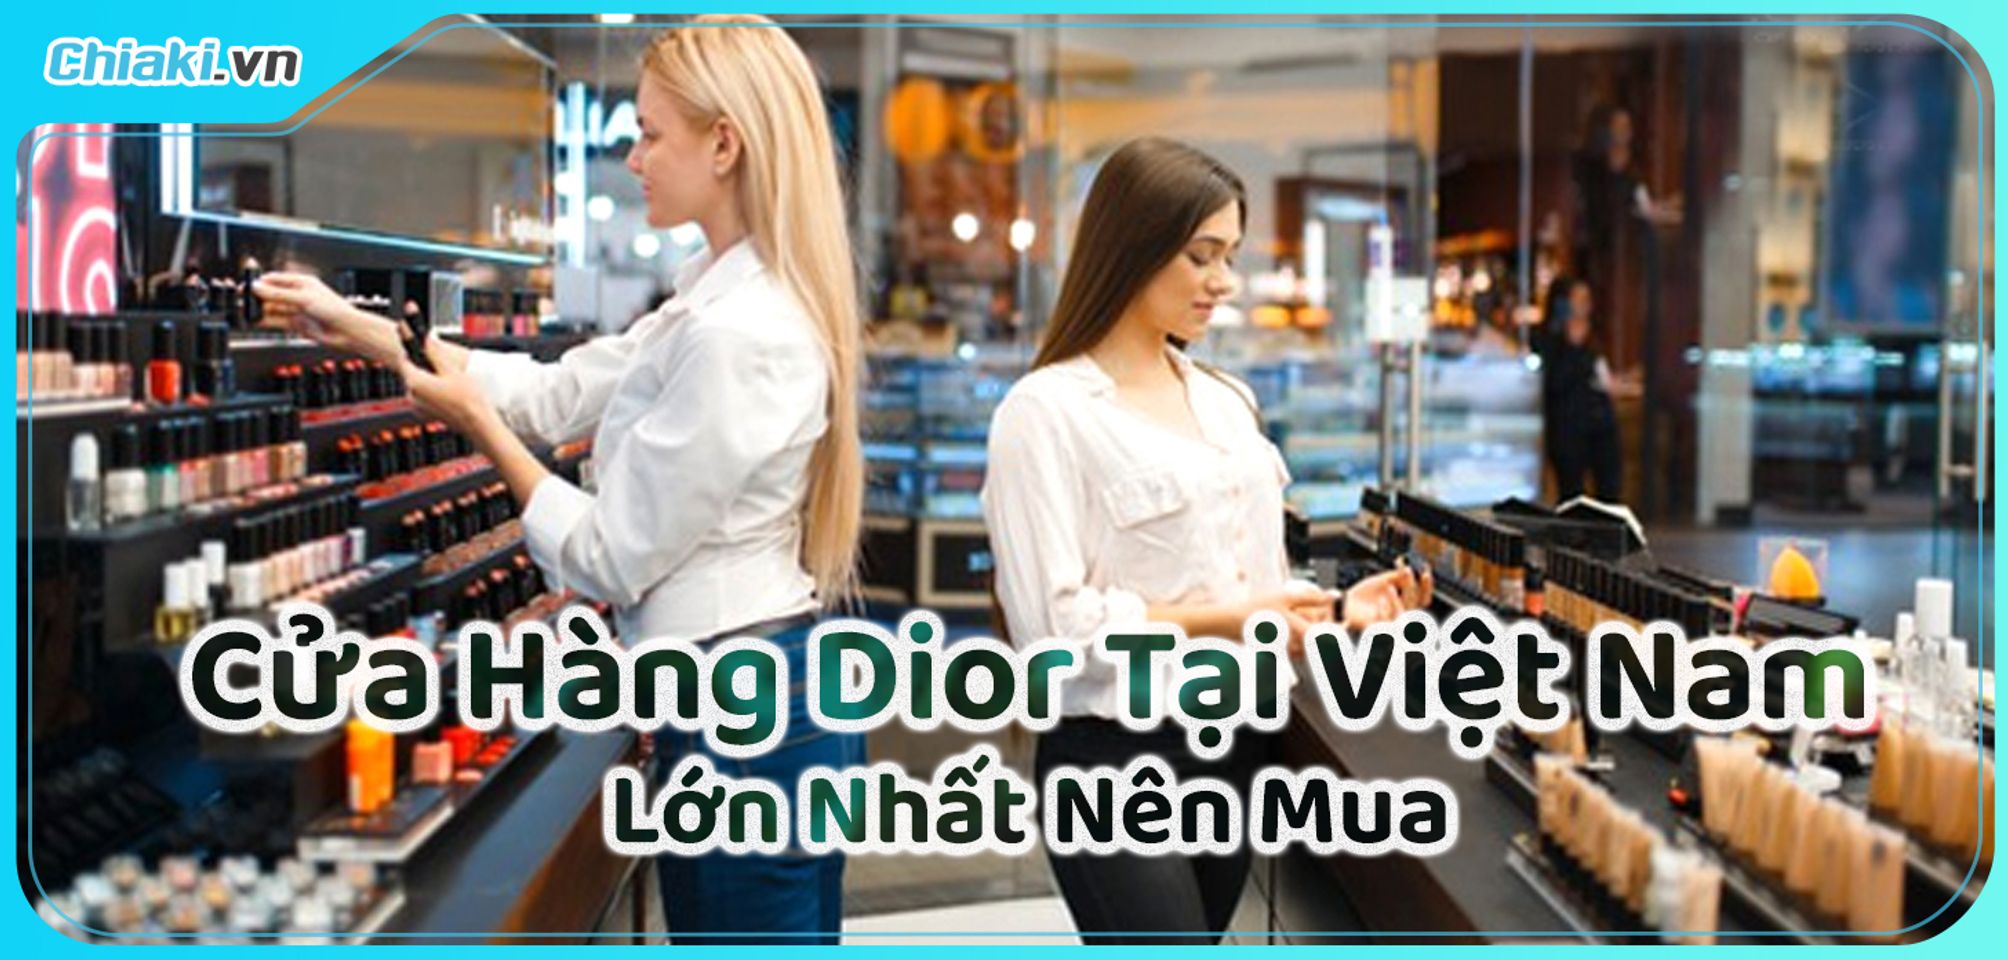 English caption below LAN TỎA VẺ  Takashimaya Vietnam  Facebook